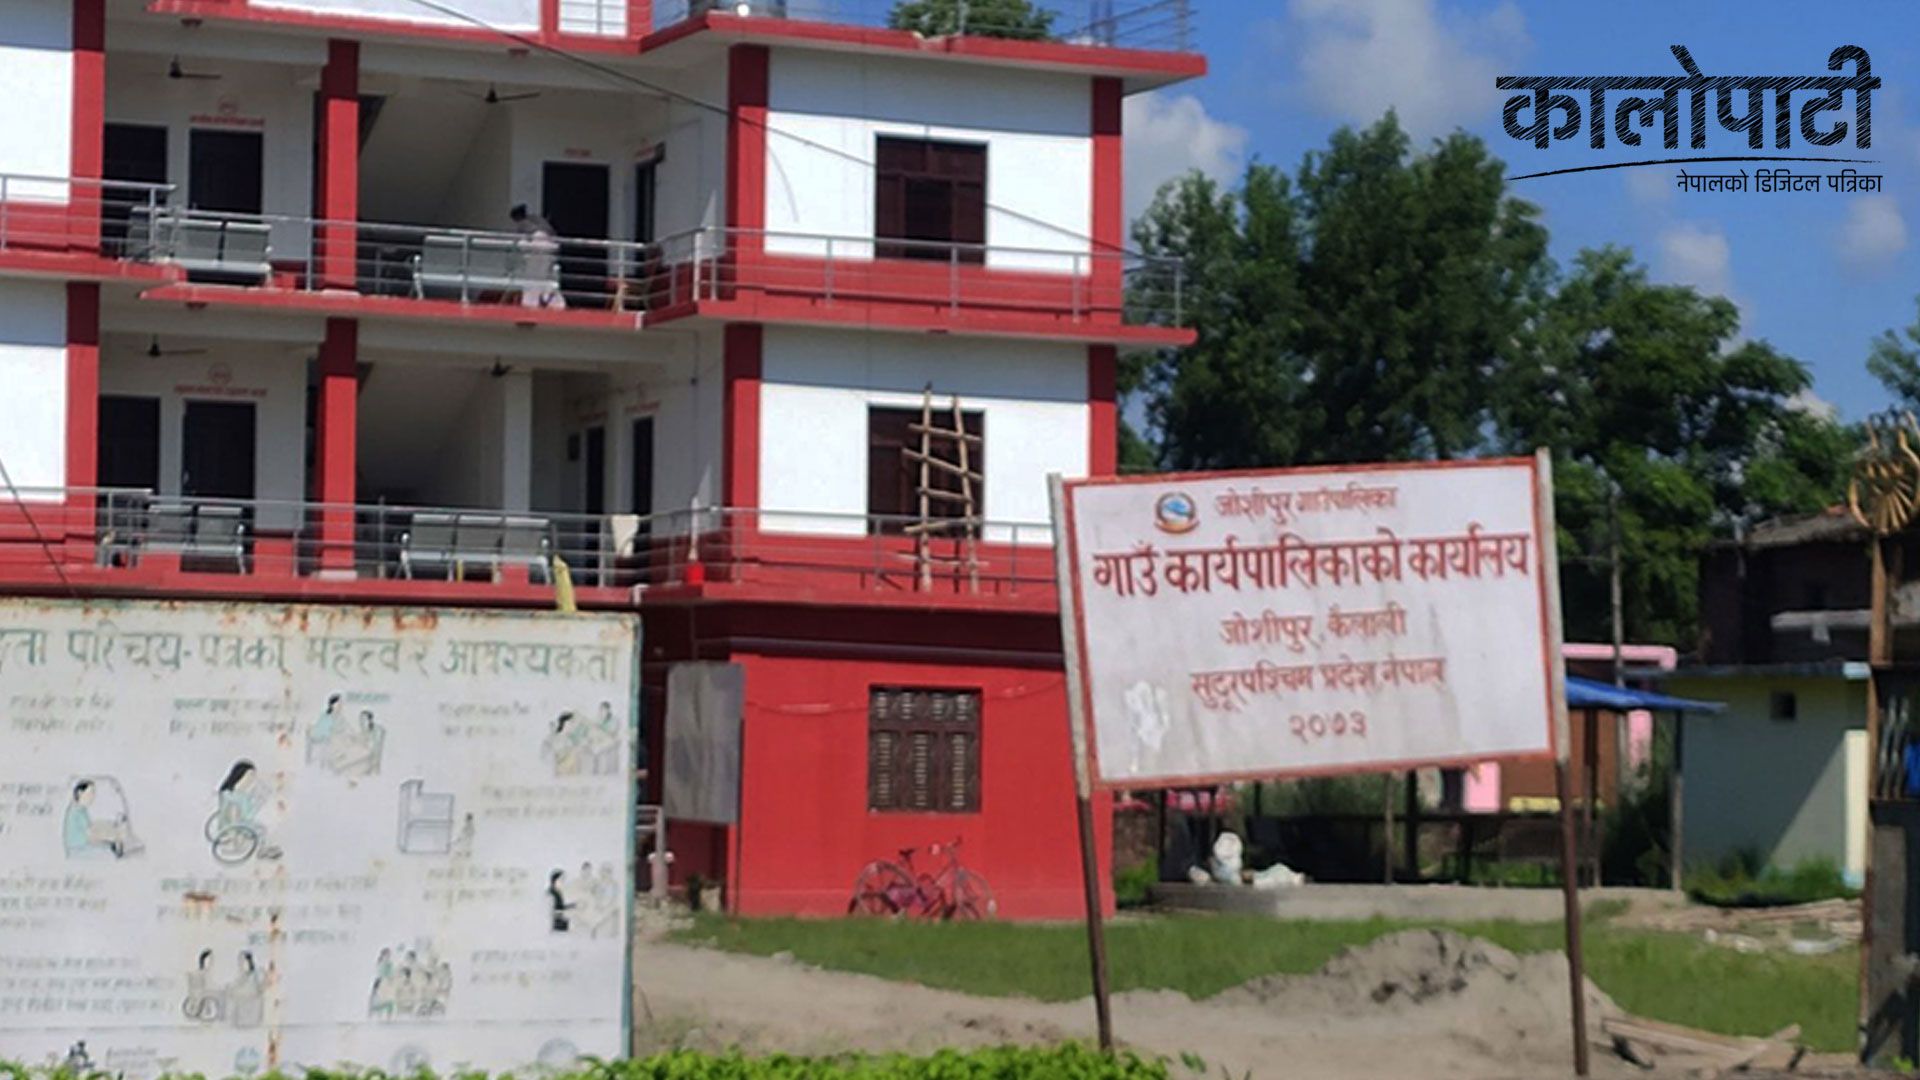 जोशीपुर गाउँपालिकाको नीति तथा कार्यक्रम : स्वास्थ्य, शिक्षा र पशुपालनलाई प्राथमिकतामा